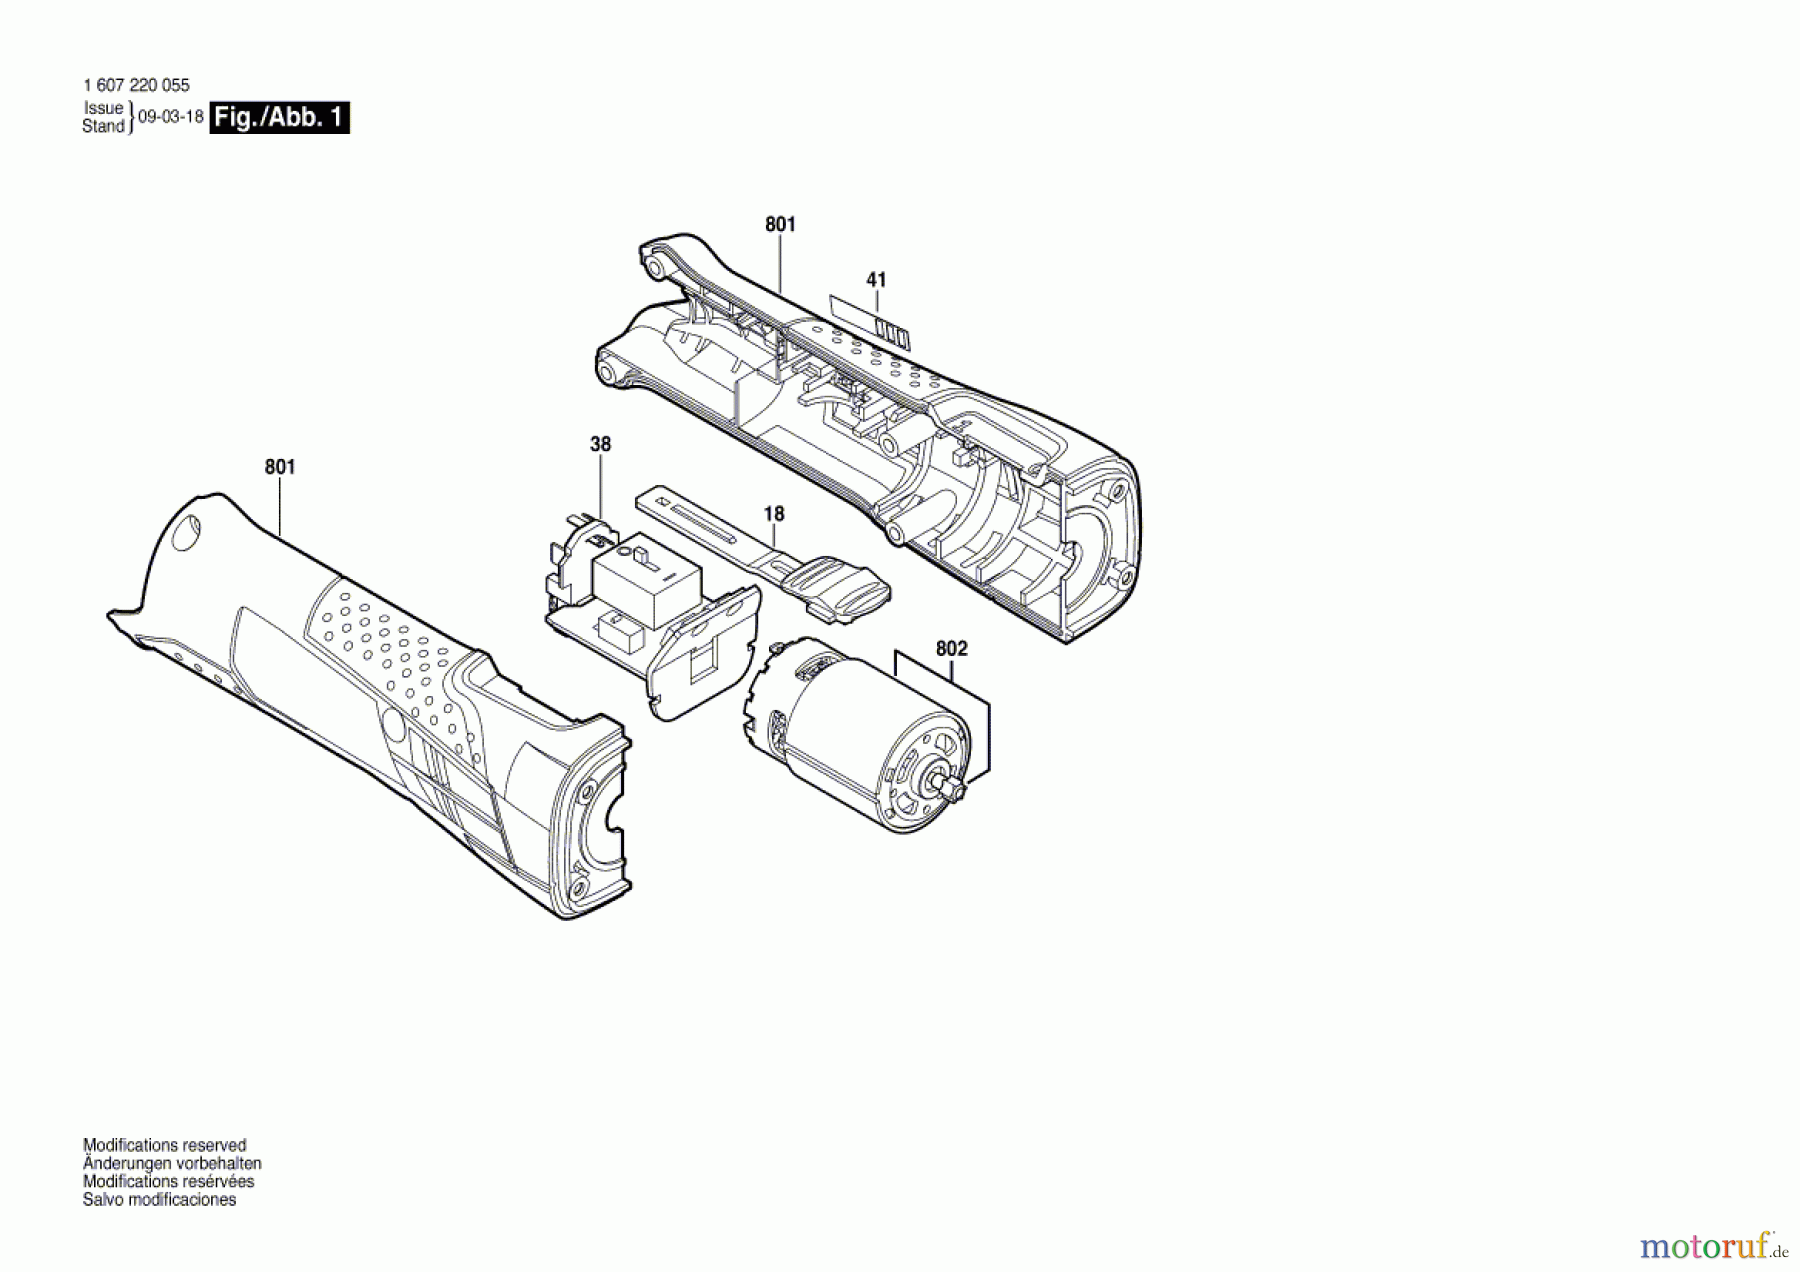  Bosch Werkzeug Antriebseinheit ---- Seite 1